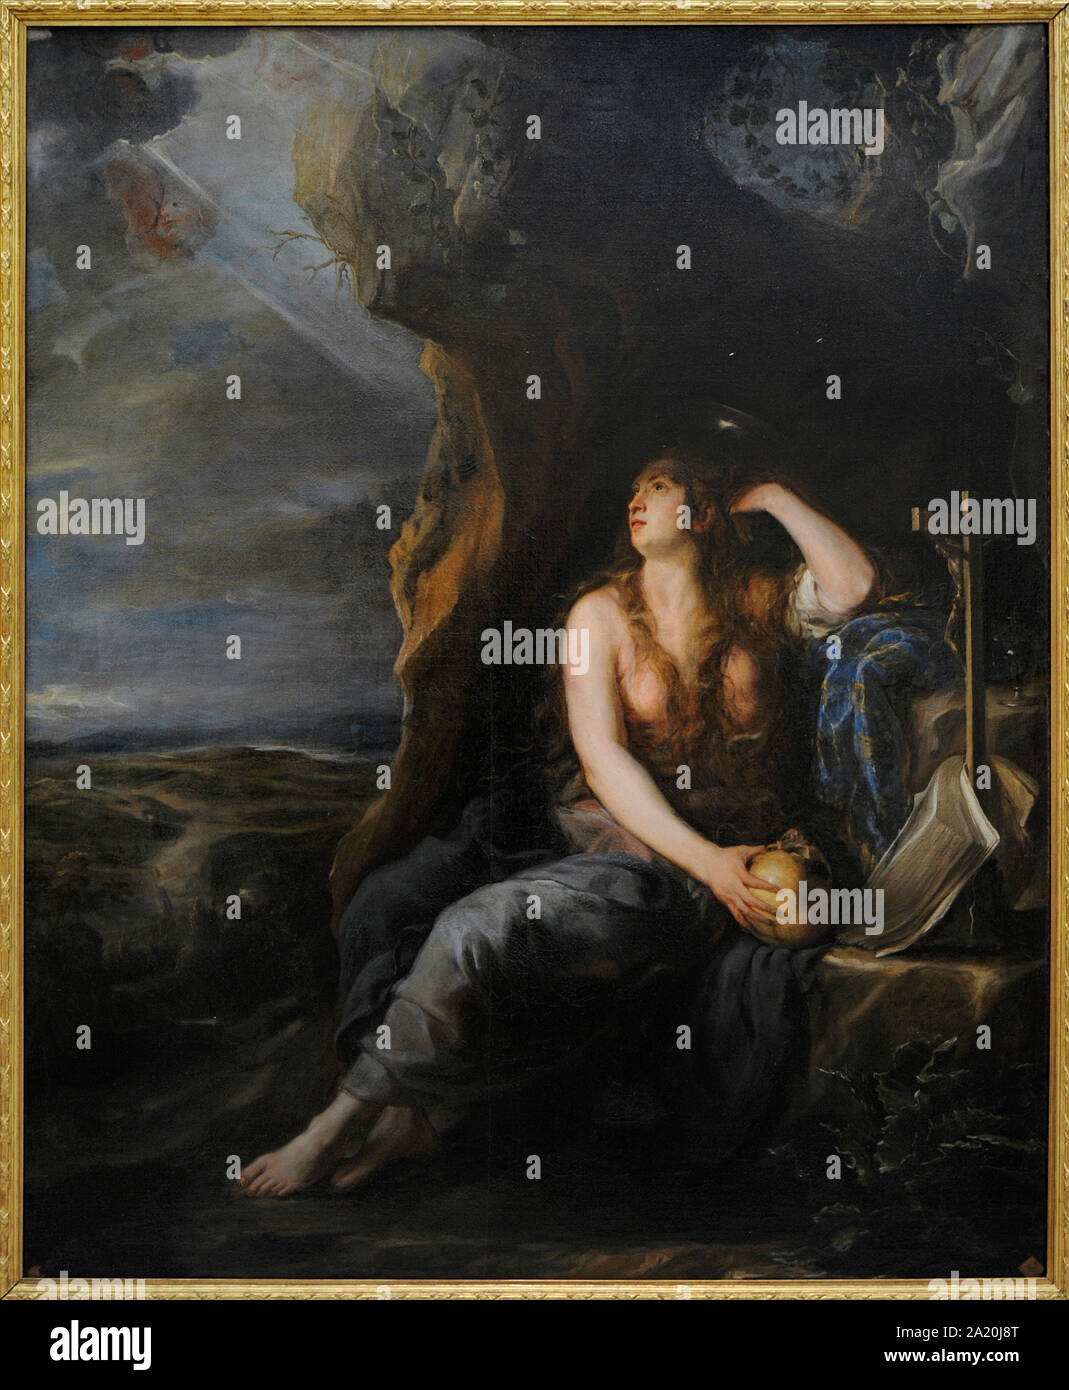 Juan Carreño de Miranda (1614-1685). Spanischer Maler. Reuige Magdalena, 1654. San Fernando Königliche Akademie der Schönen Künste in Madrid. Spanien. Stockfoto